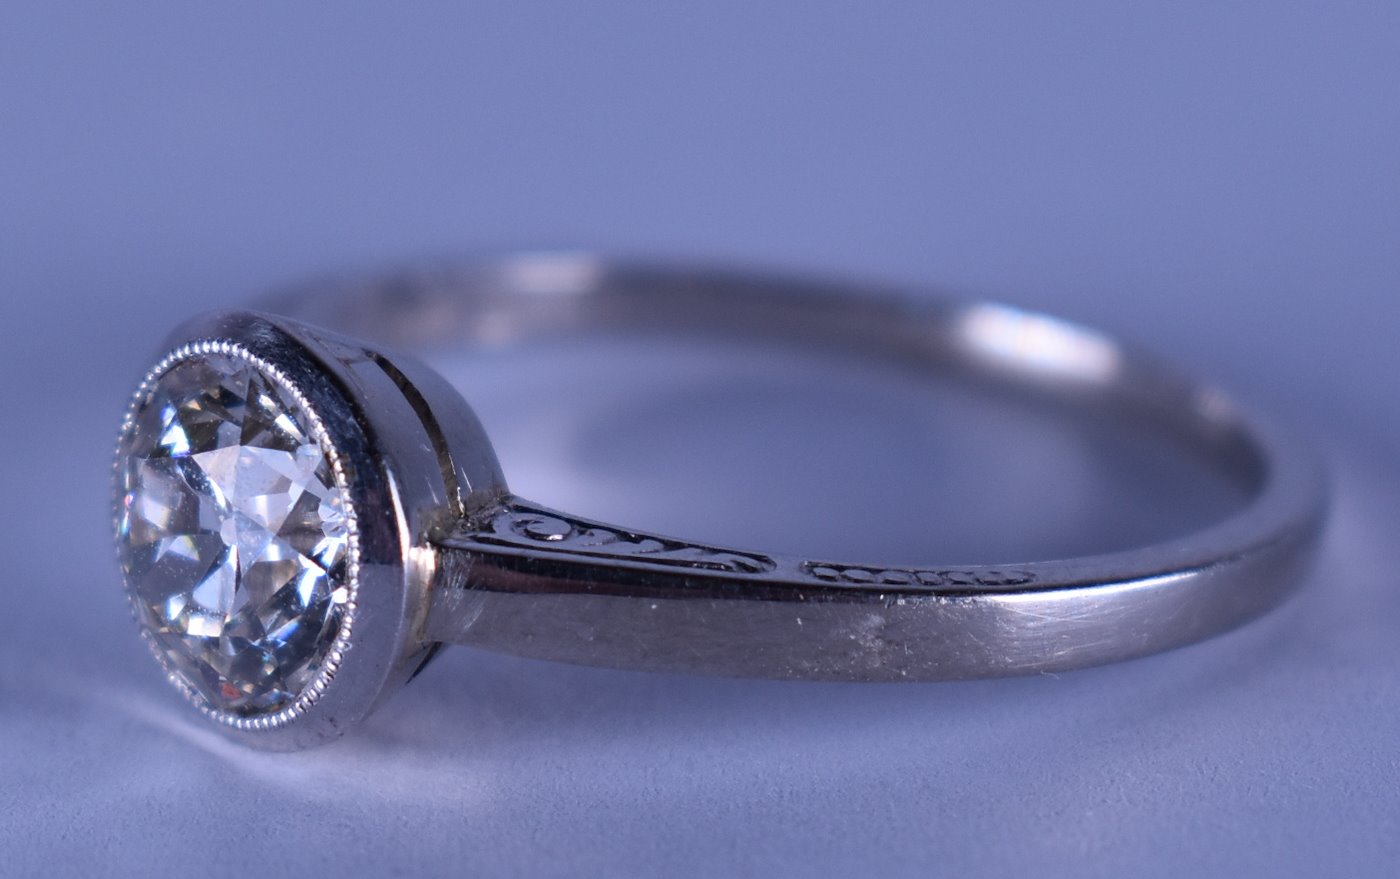 . - Zlatý prsten s diamantem solitér (cca 1.35 ct.), zlato 585/1000, punc lvíček, celková hmotnost 3,2 g